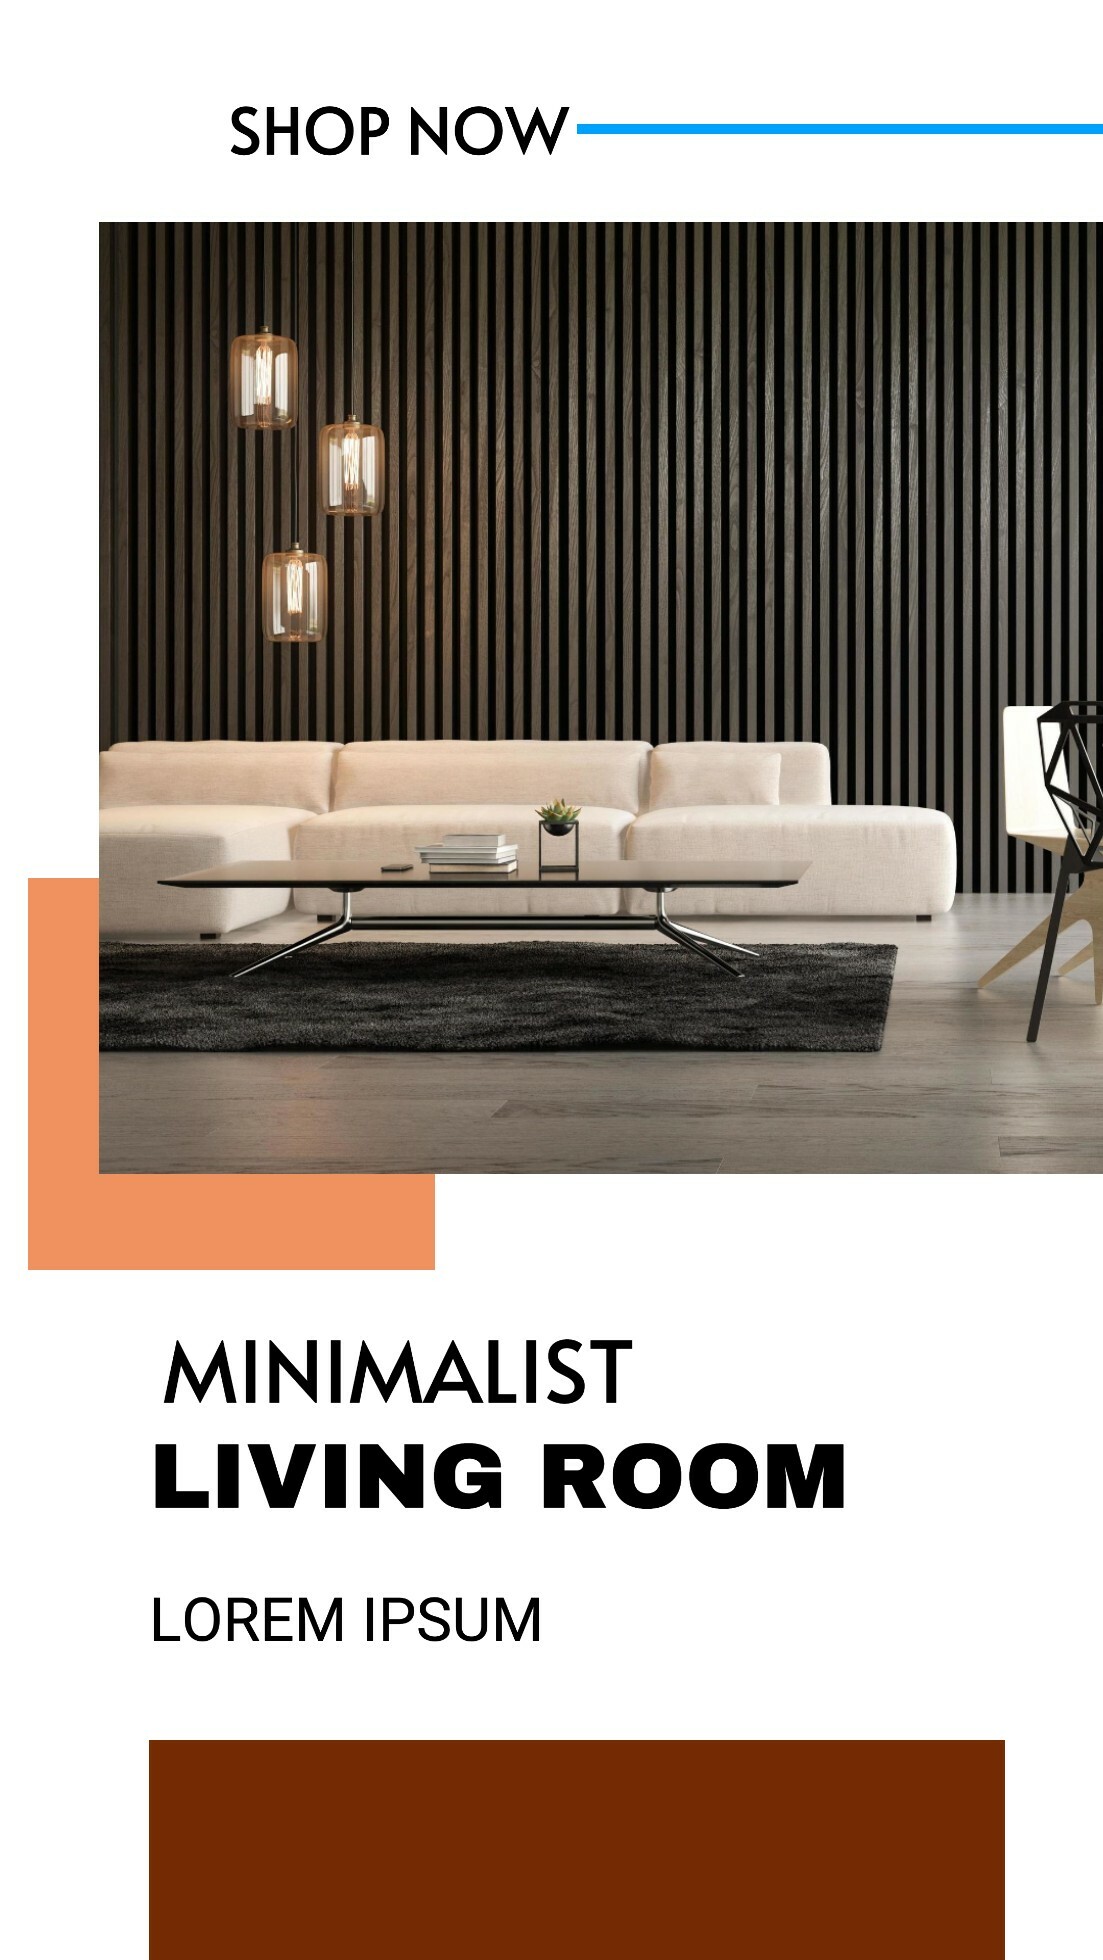 Minimalist living room template